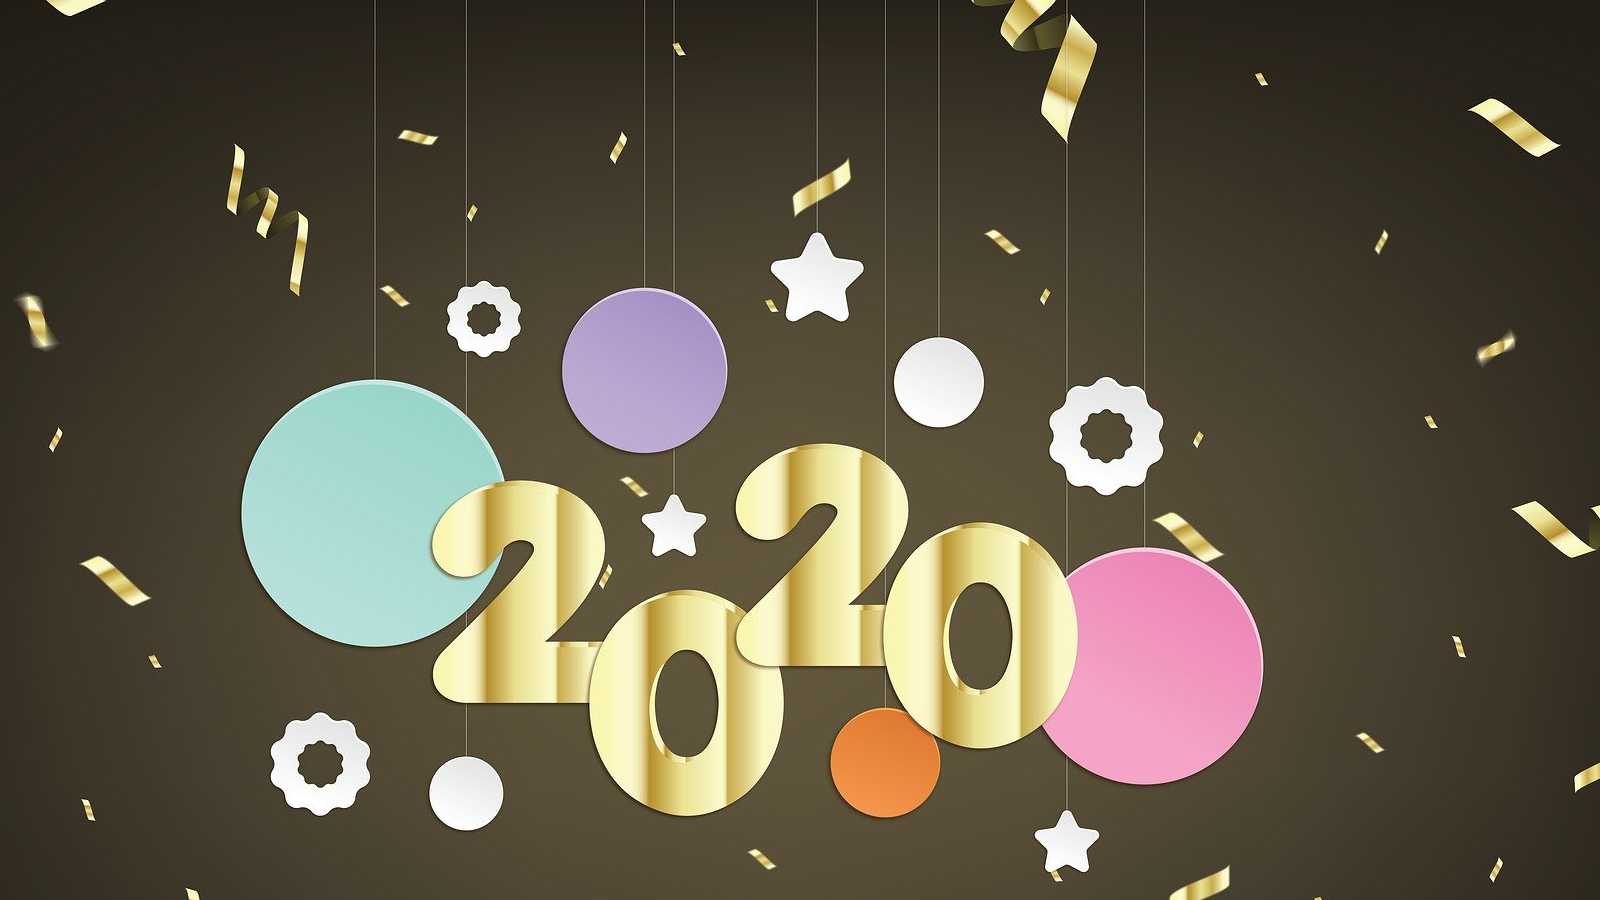 Meilleurs vœux pour 2020 (c) Pixabay